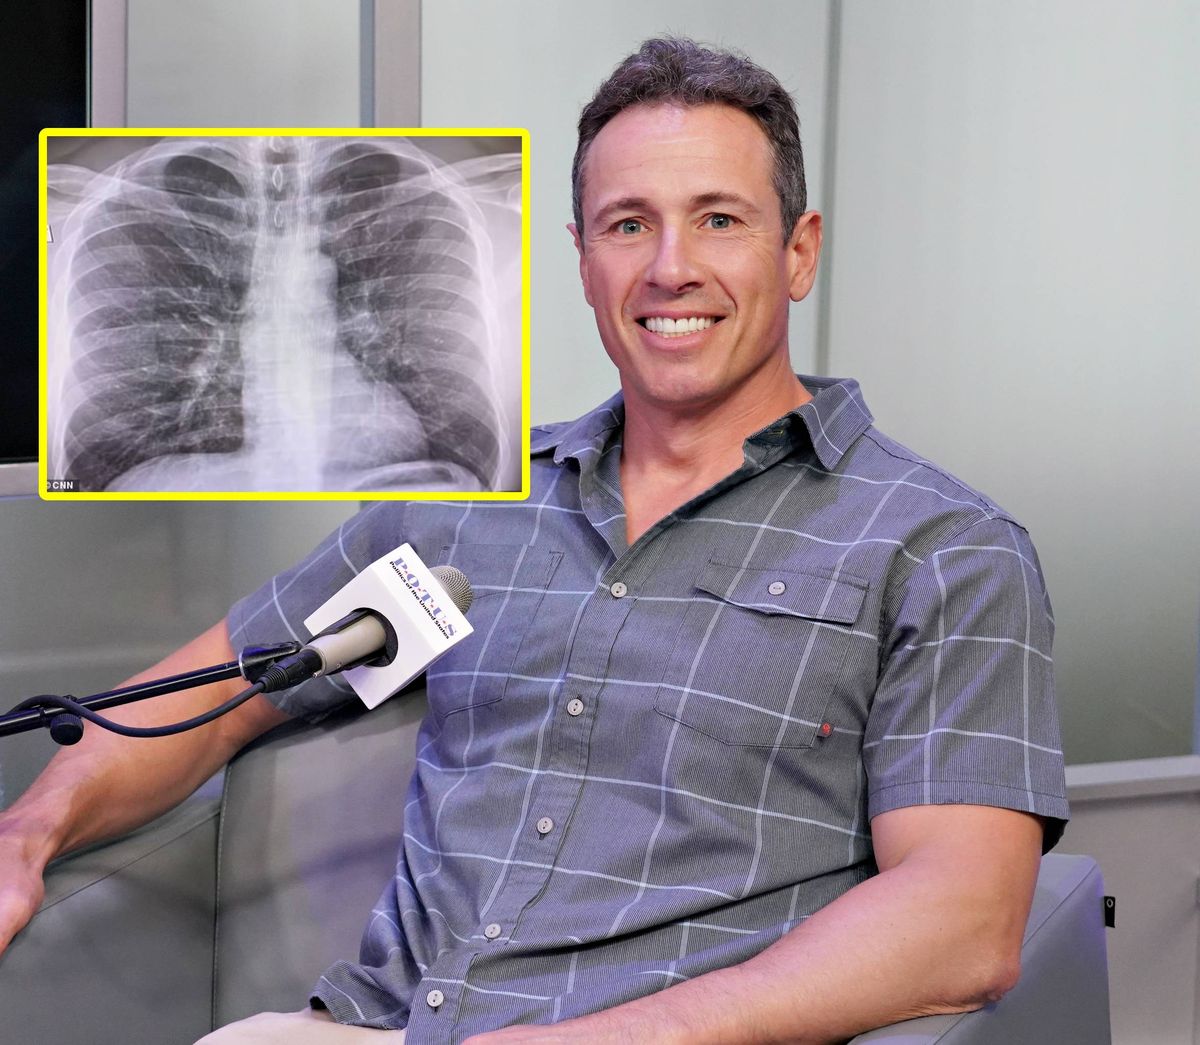 Chris Cuomo, dziennikarz CNN pokazał rentgen swoich płuc. Jest zakażony koronawirusem